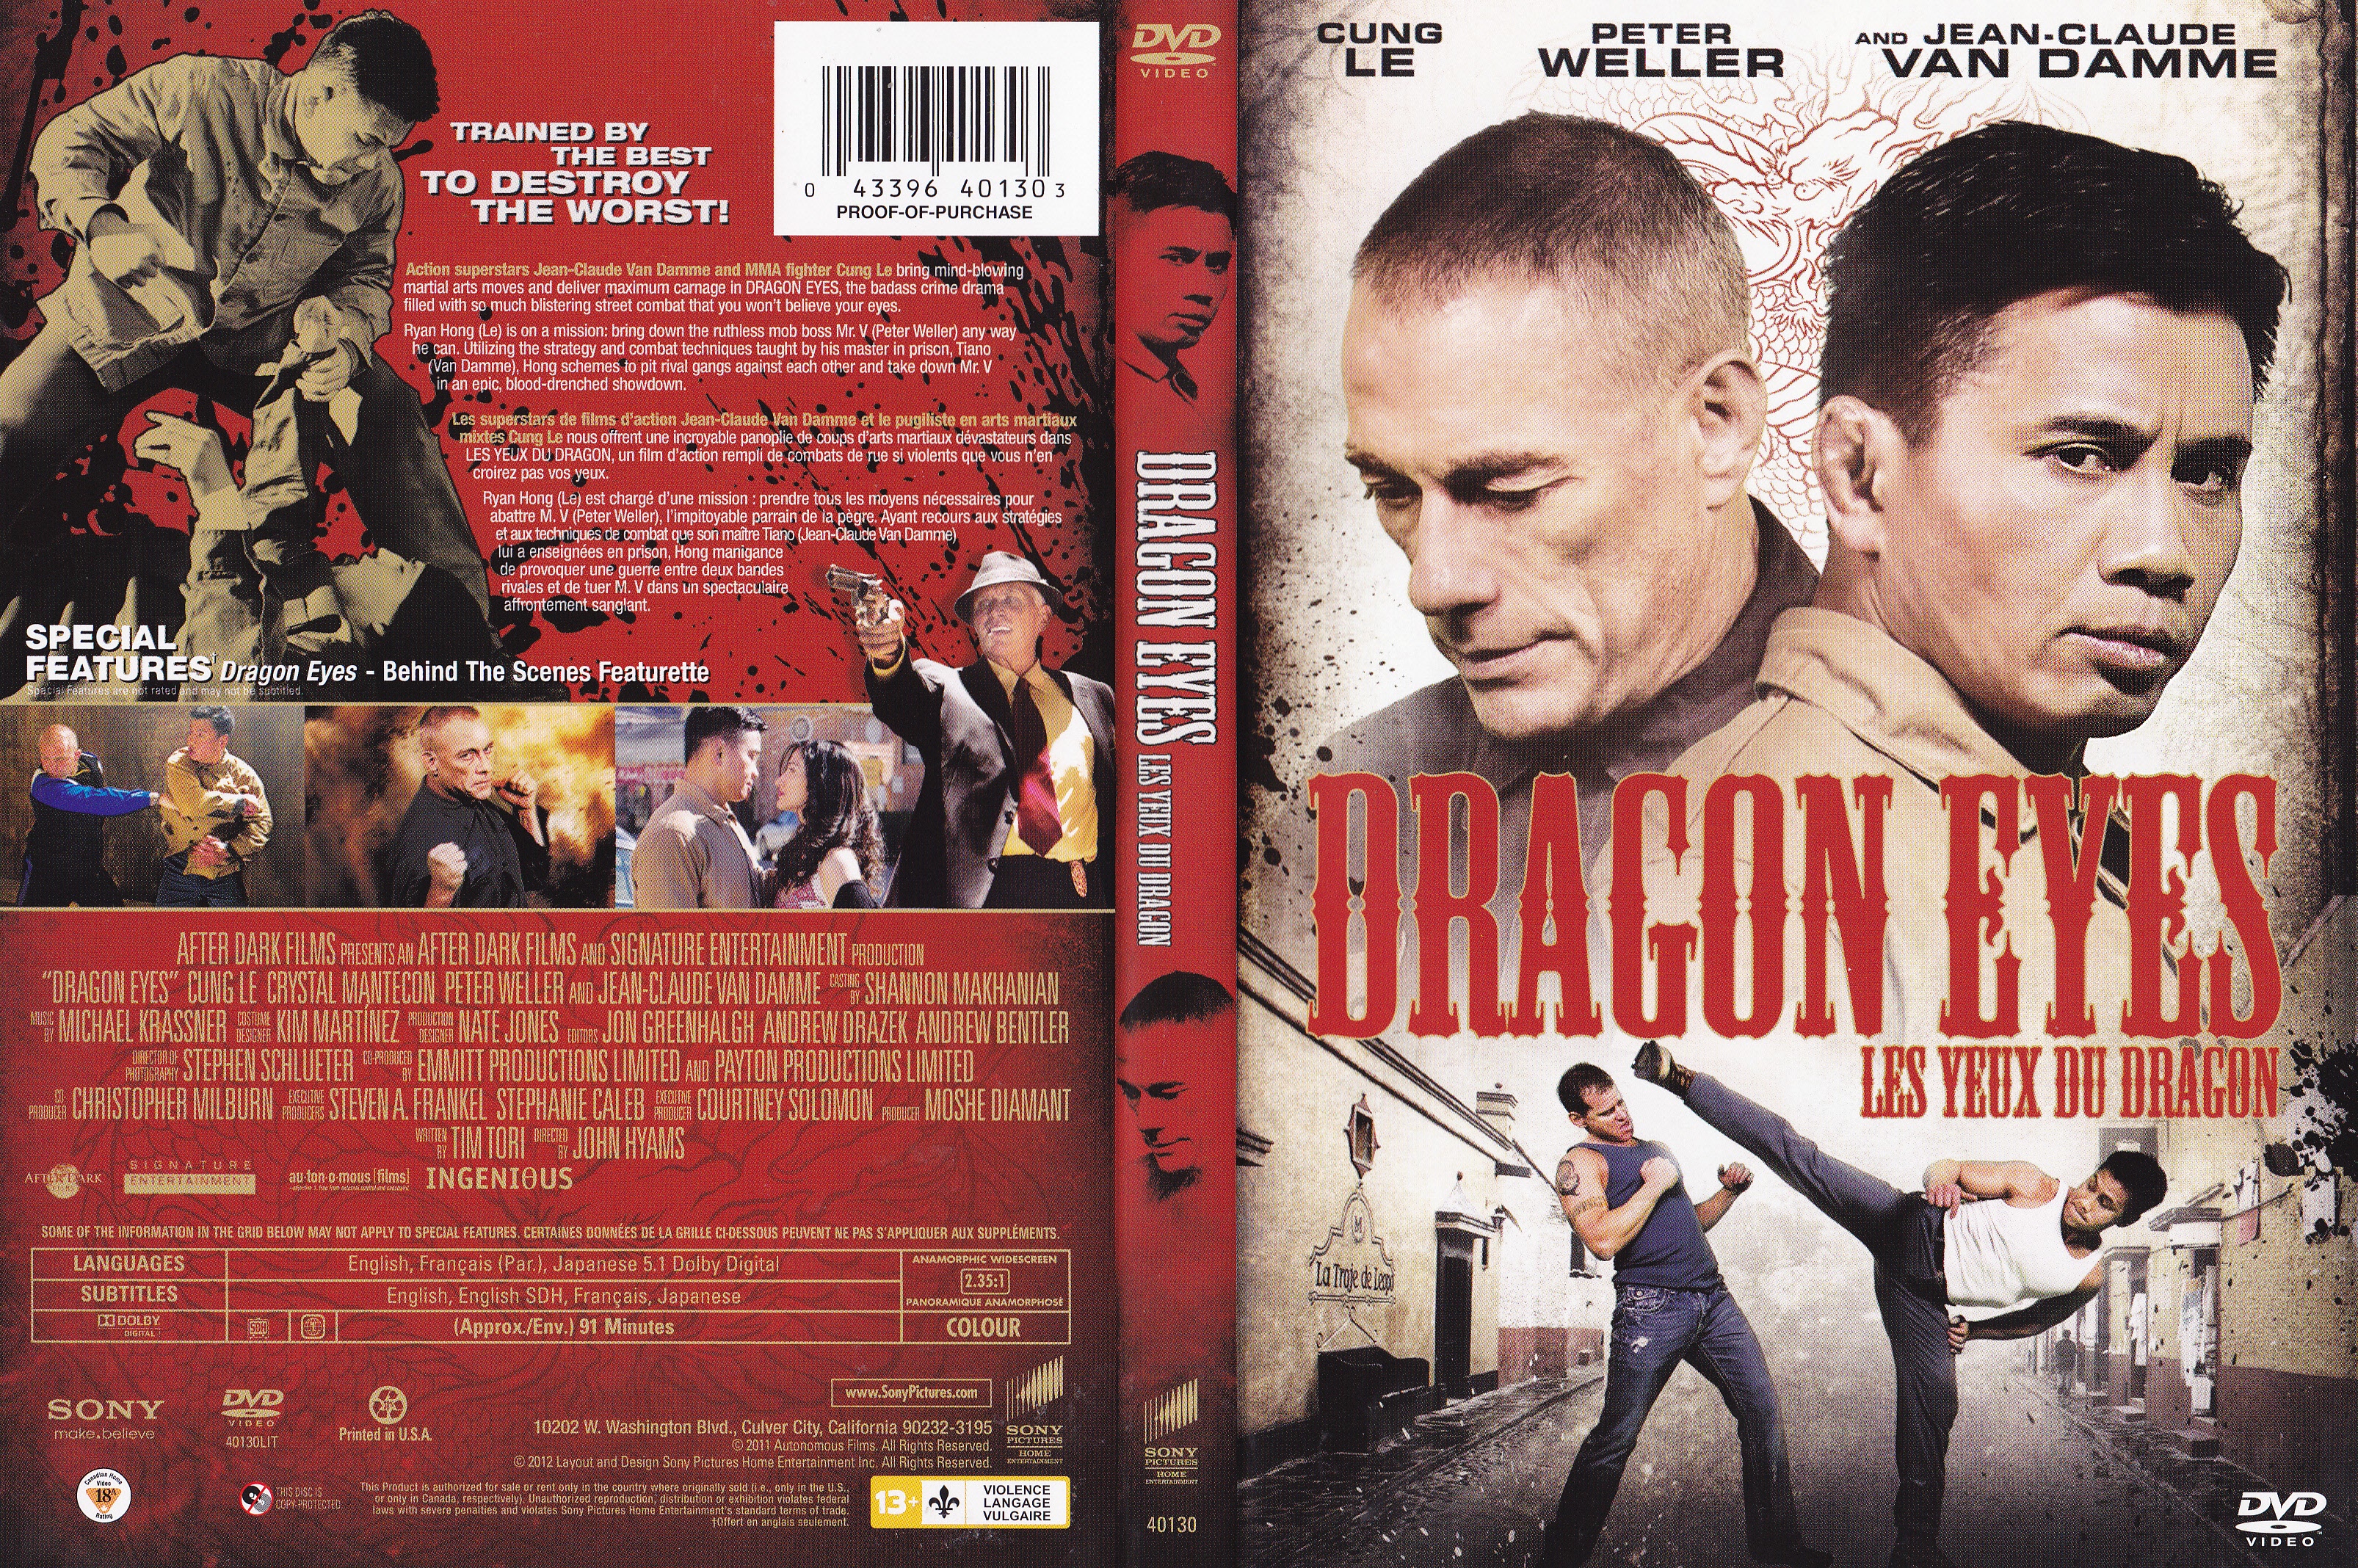 Jaquette DVD Les yeux du dragon - Dragon eyes (Canadienne)